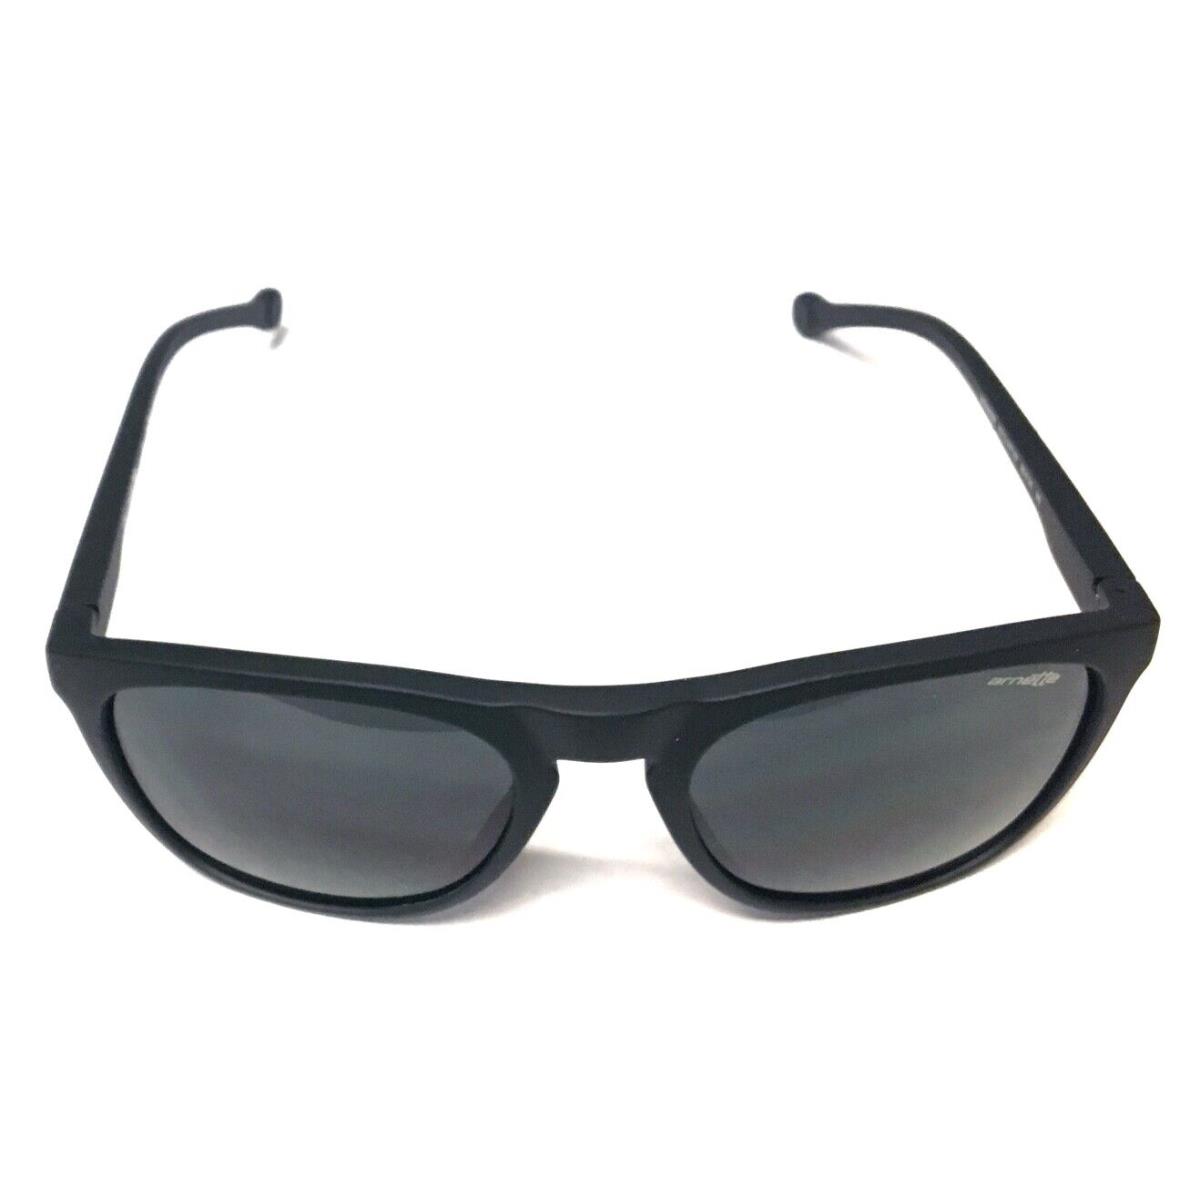 Arnette Moniker 4212 447/87 Sunglasses Fuzzy Black with Gray Lenses